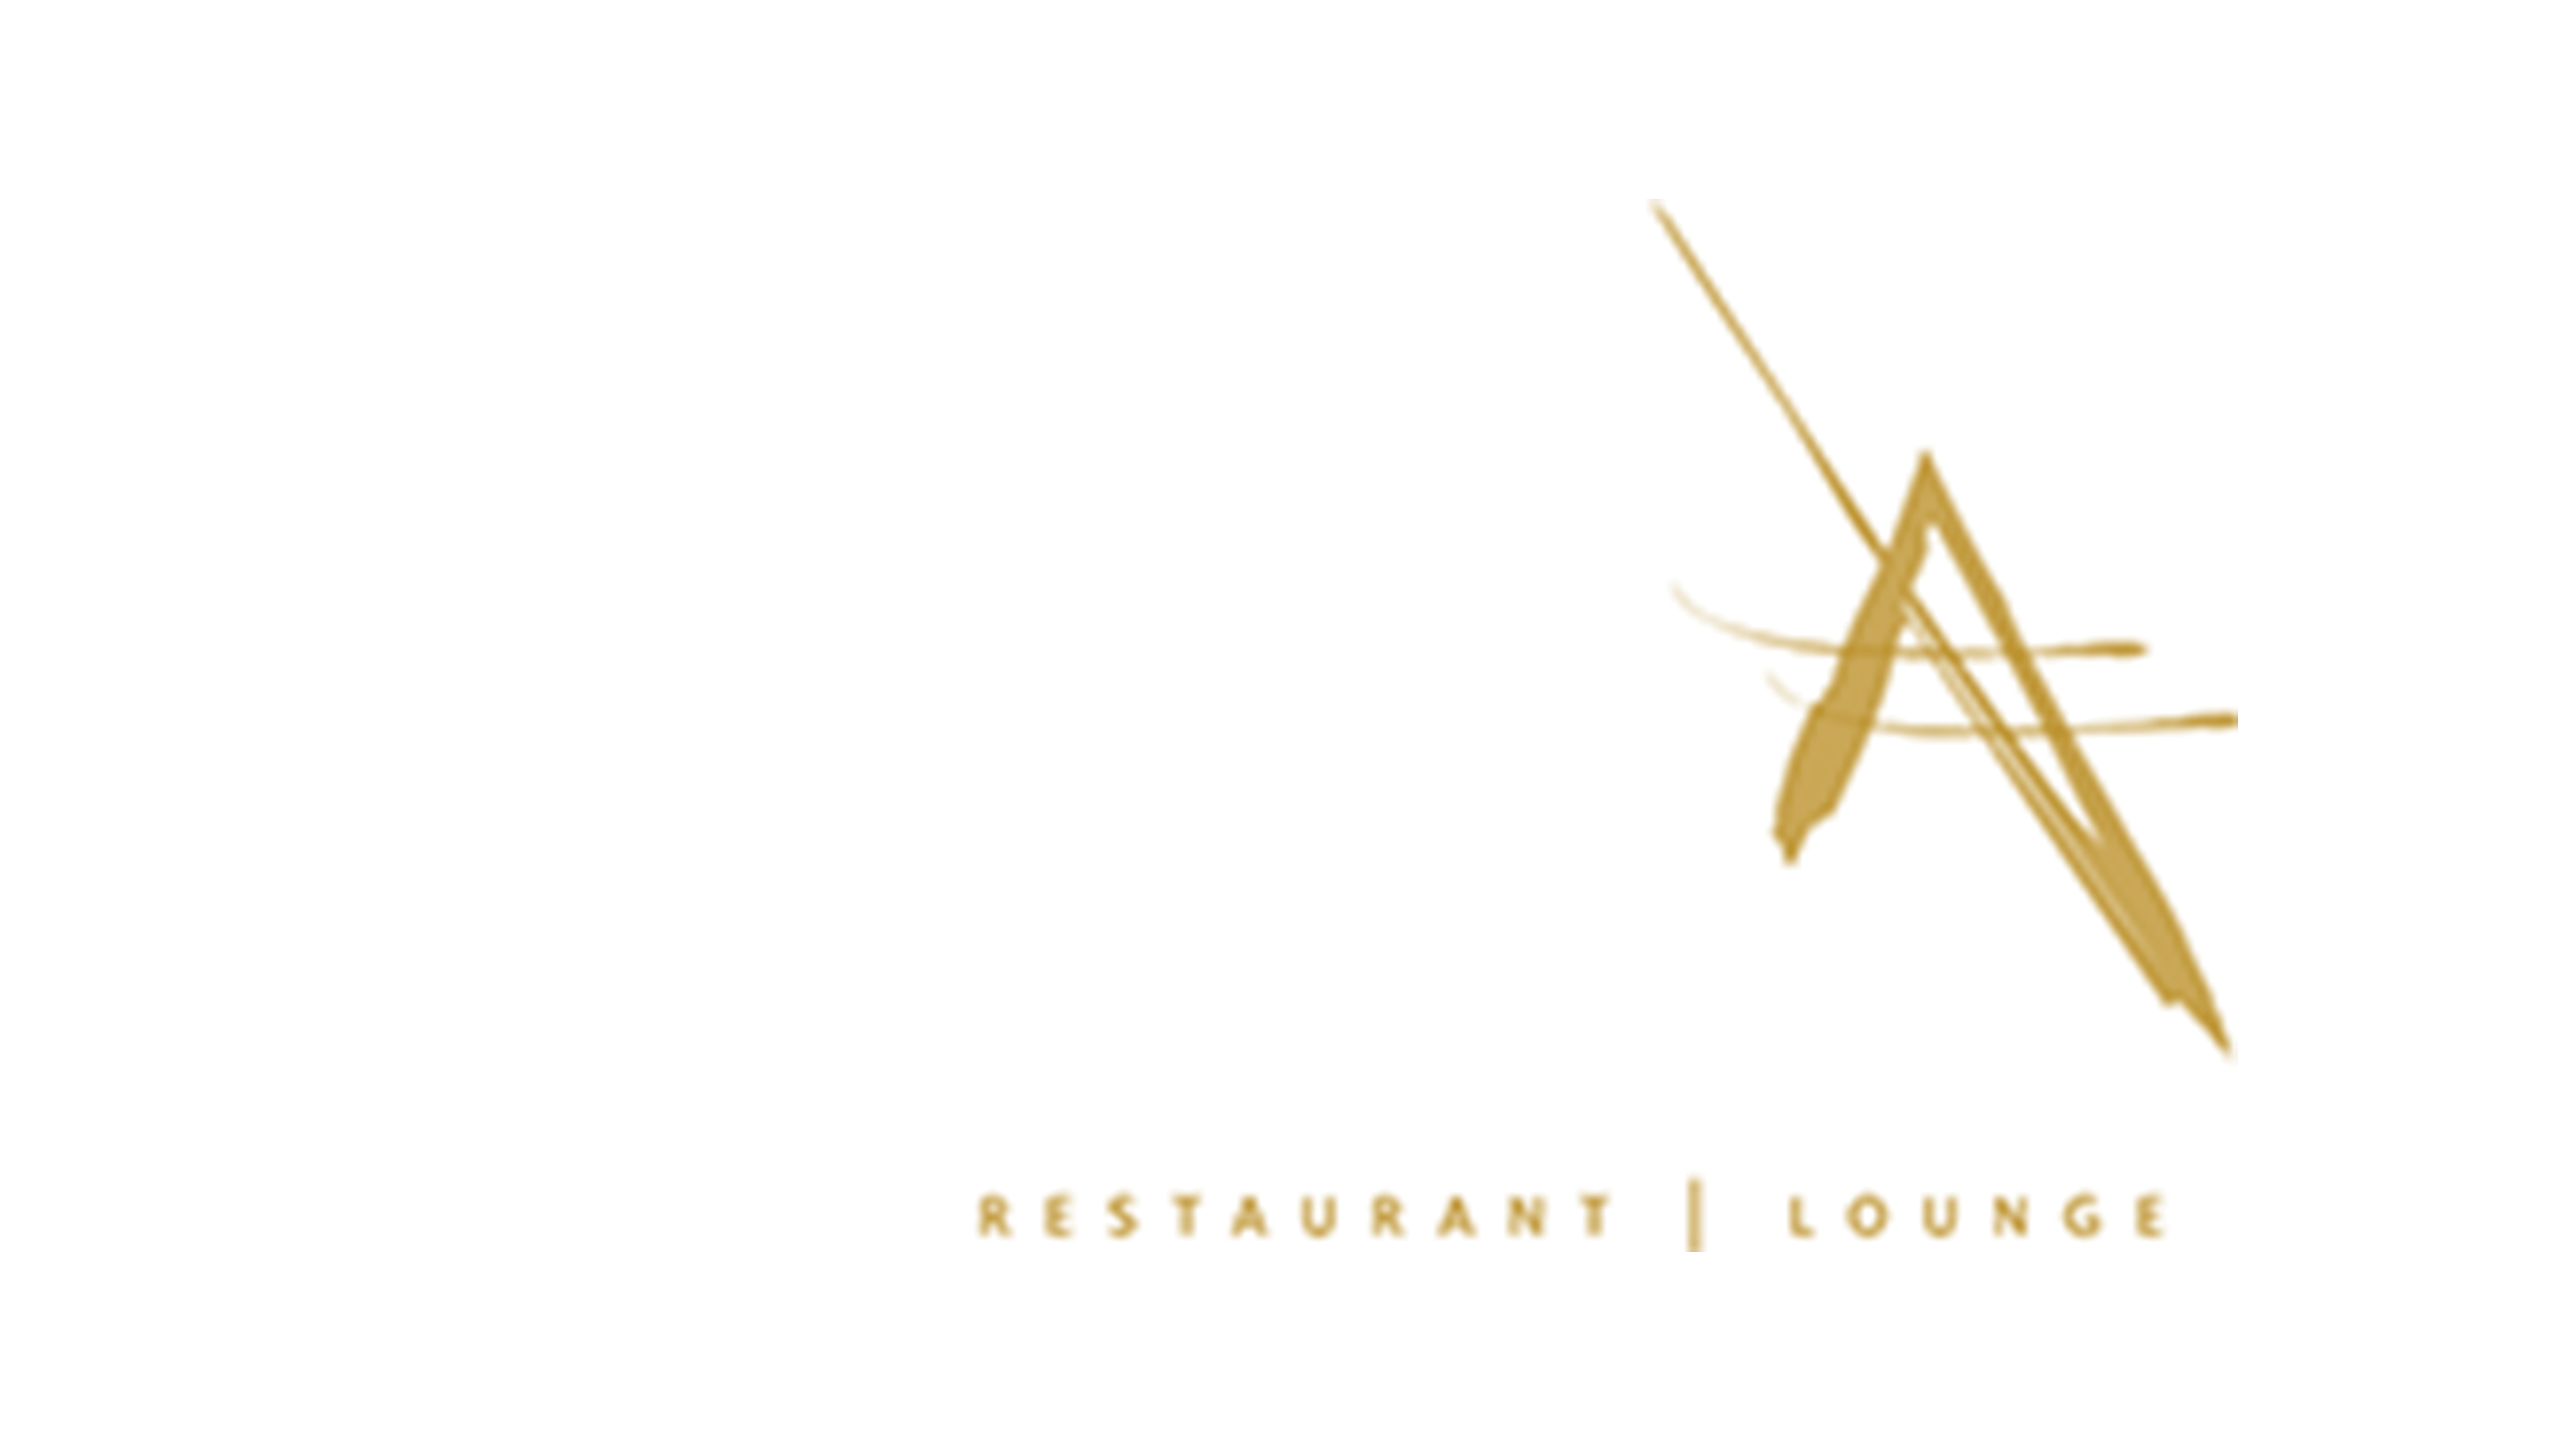 Asia Asia-325x183-min